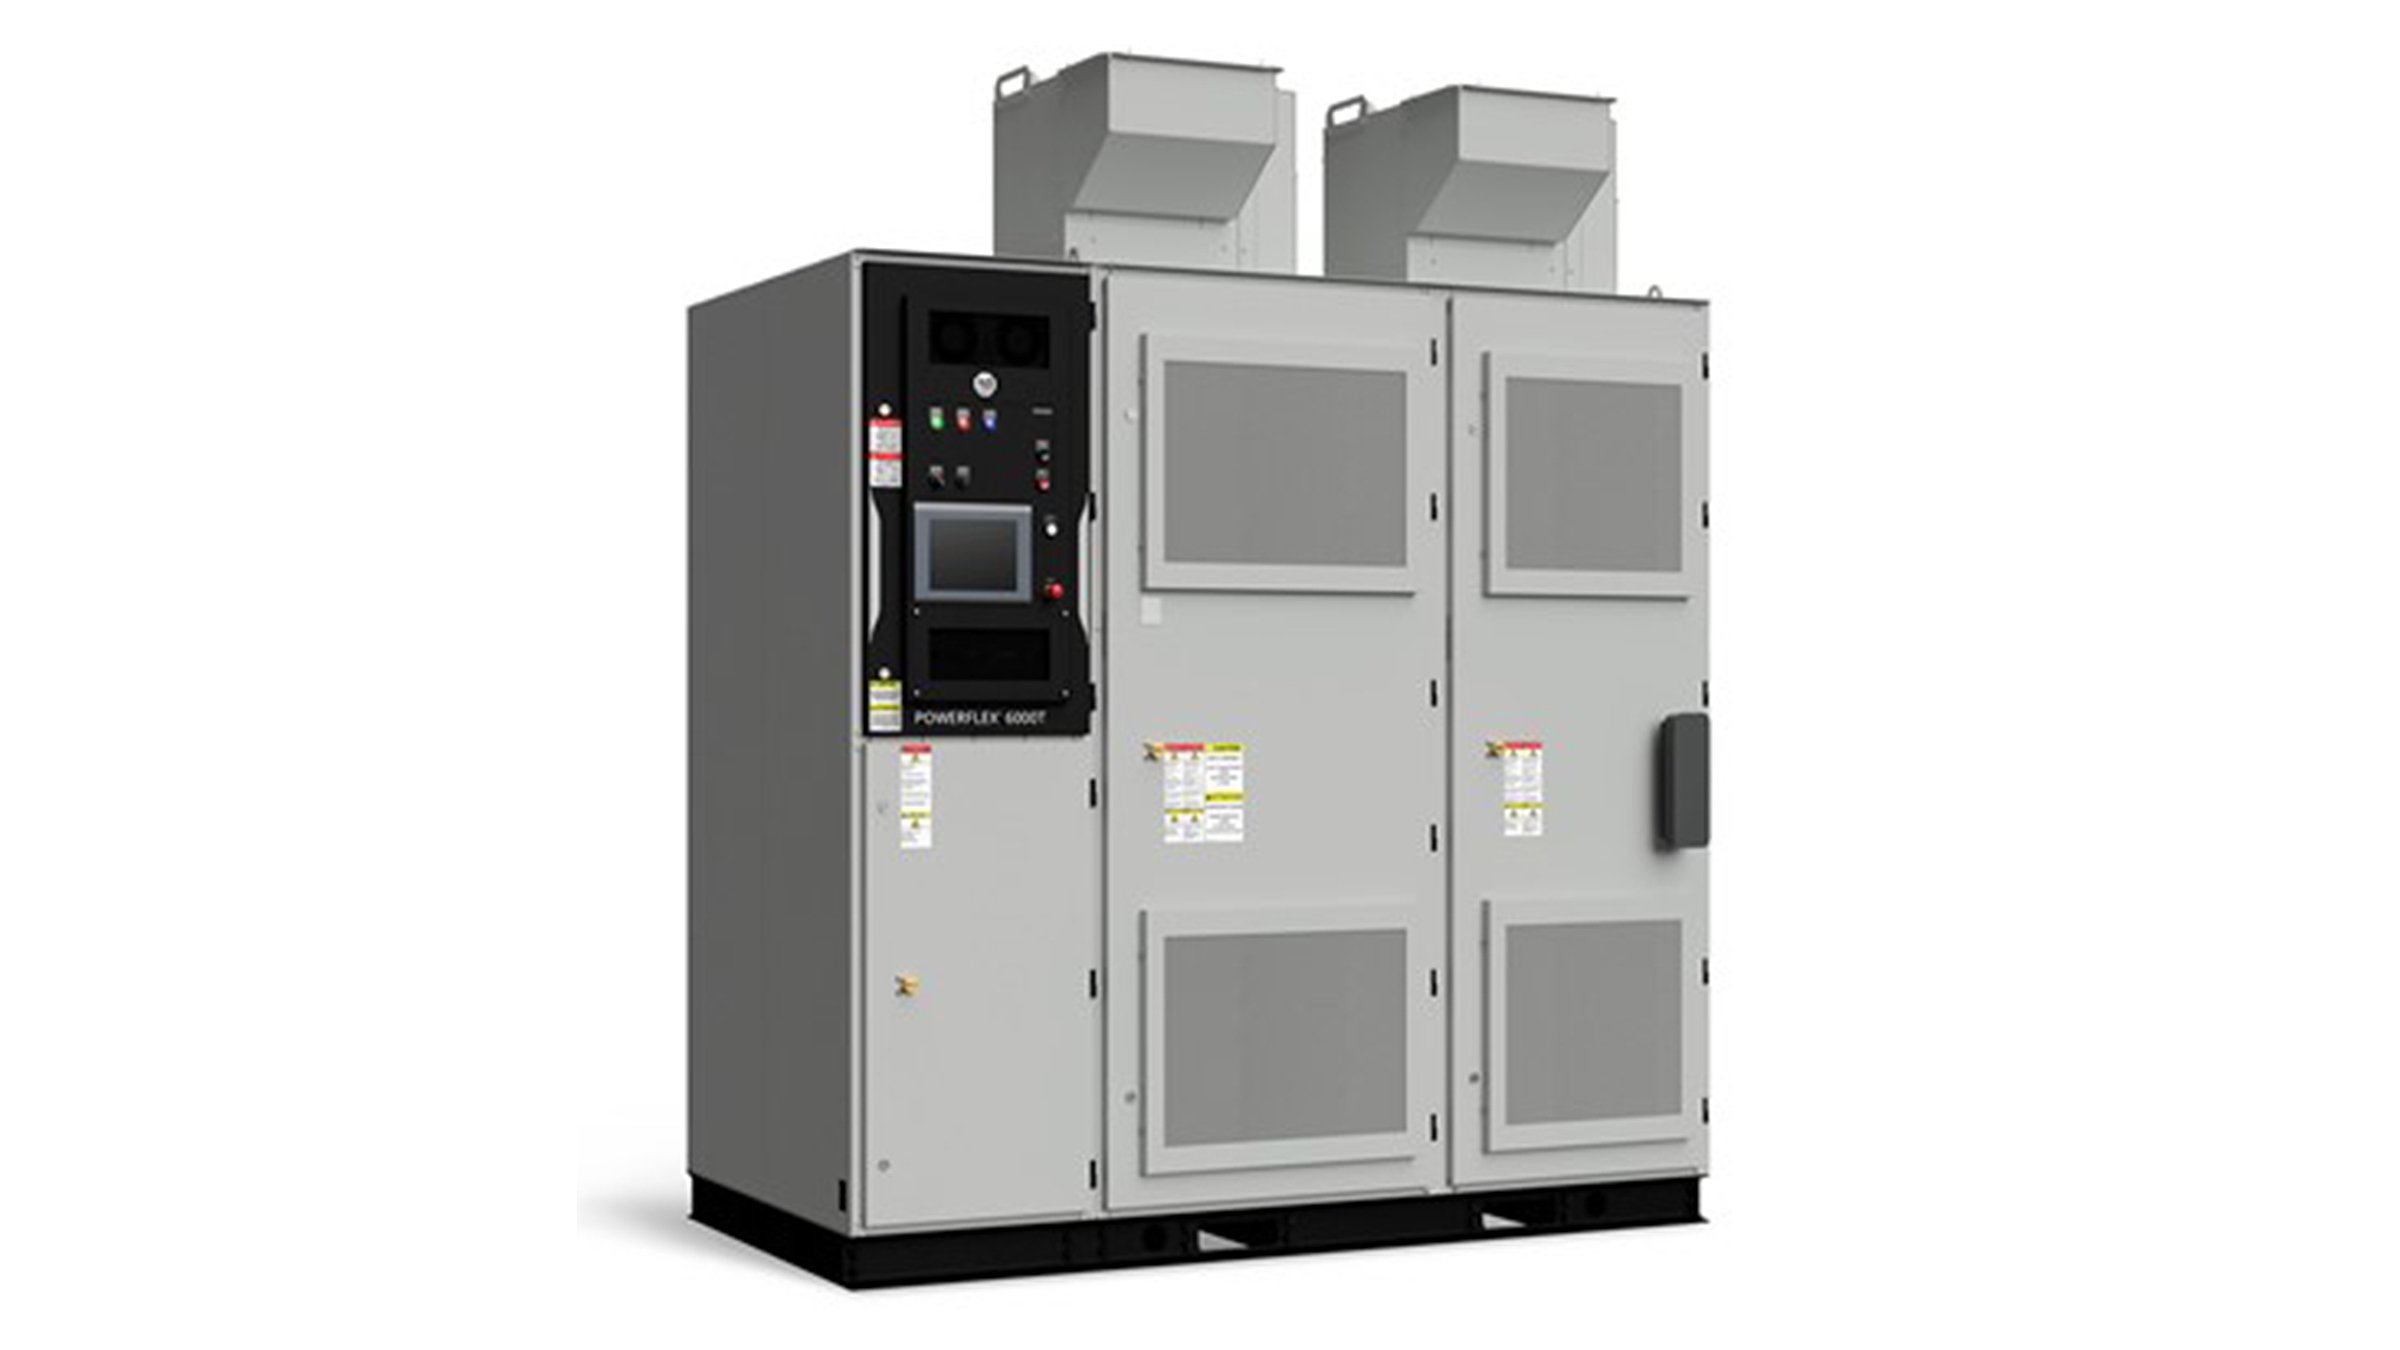 Três gabinetes metálicos altos e cinzentos lado a lado compõem a unidade de acionamento PowerFlex 6000T da Rockwell Automation, usada para controlar motores em aplicações industriais pesadas.